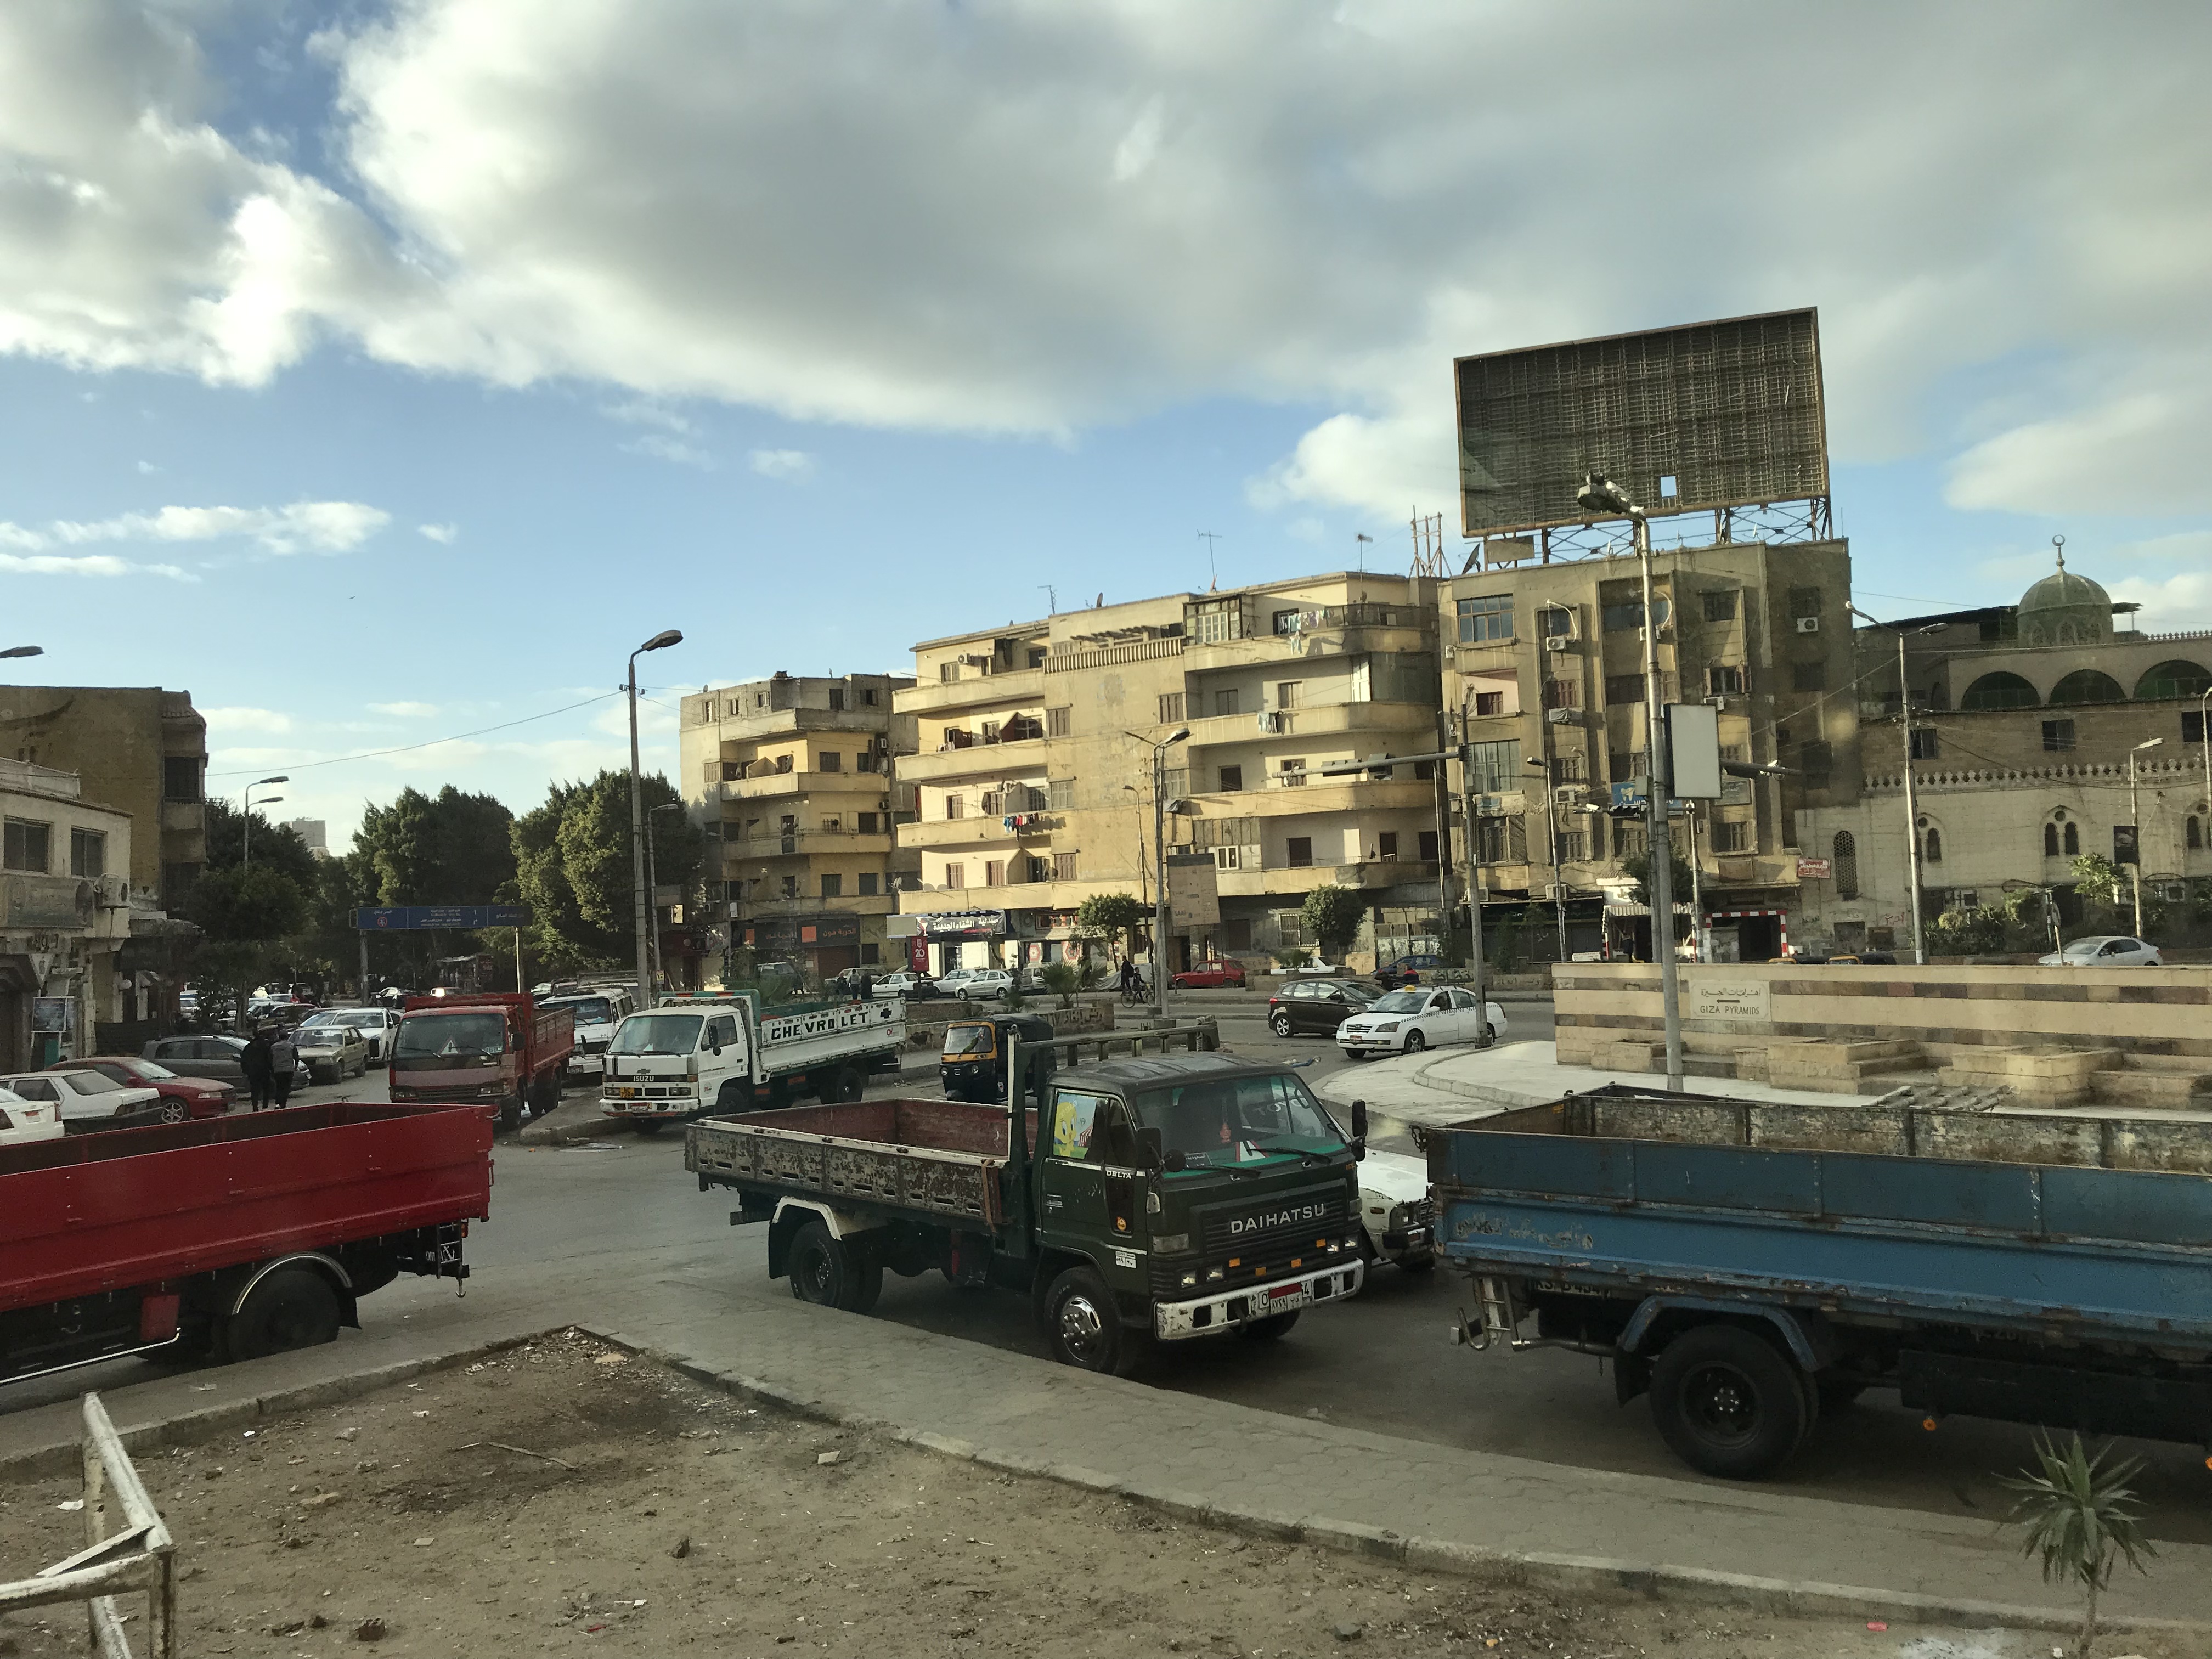 ./2018/16 - Egypt/12 - Cairo Day 4/IMG_4477.jpg